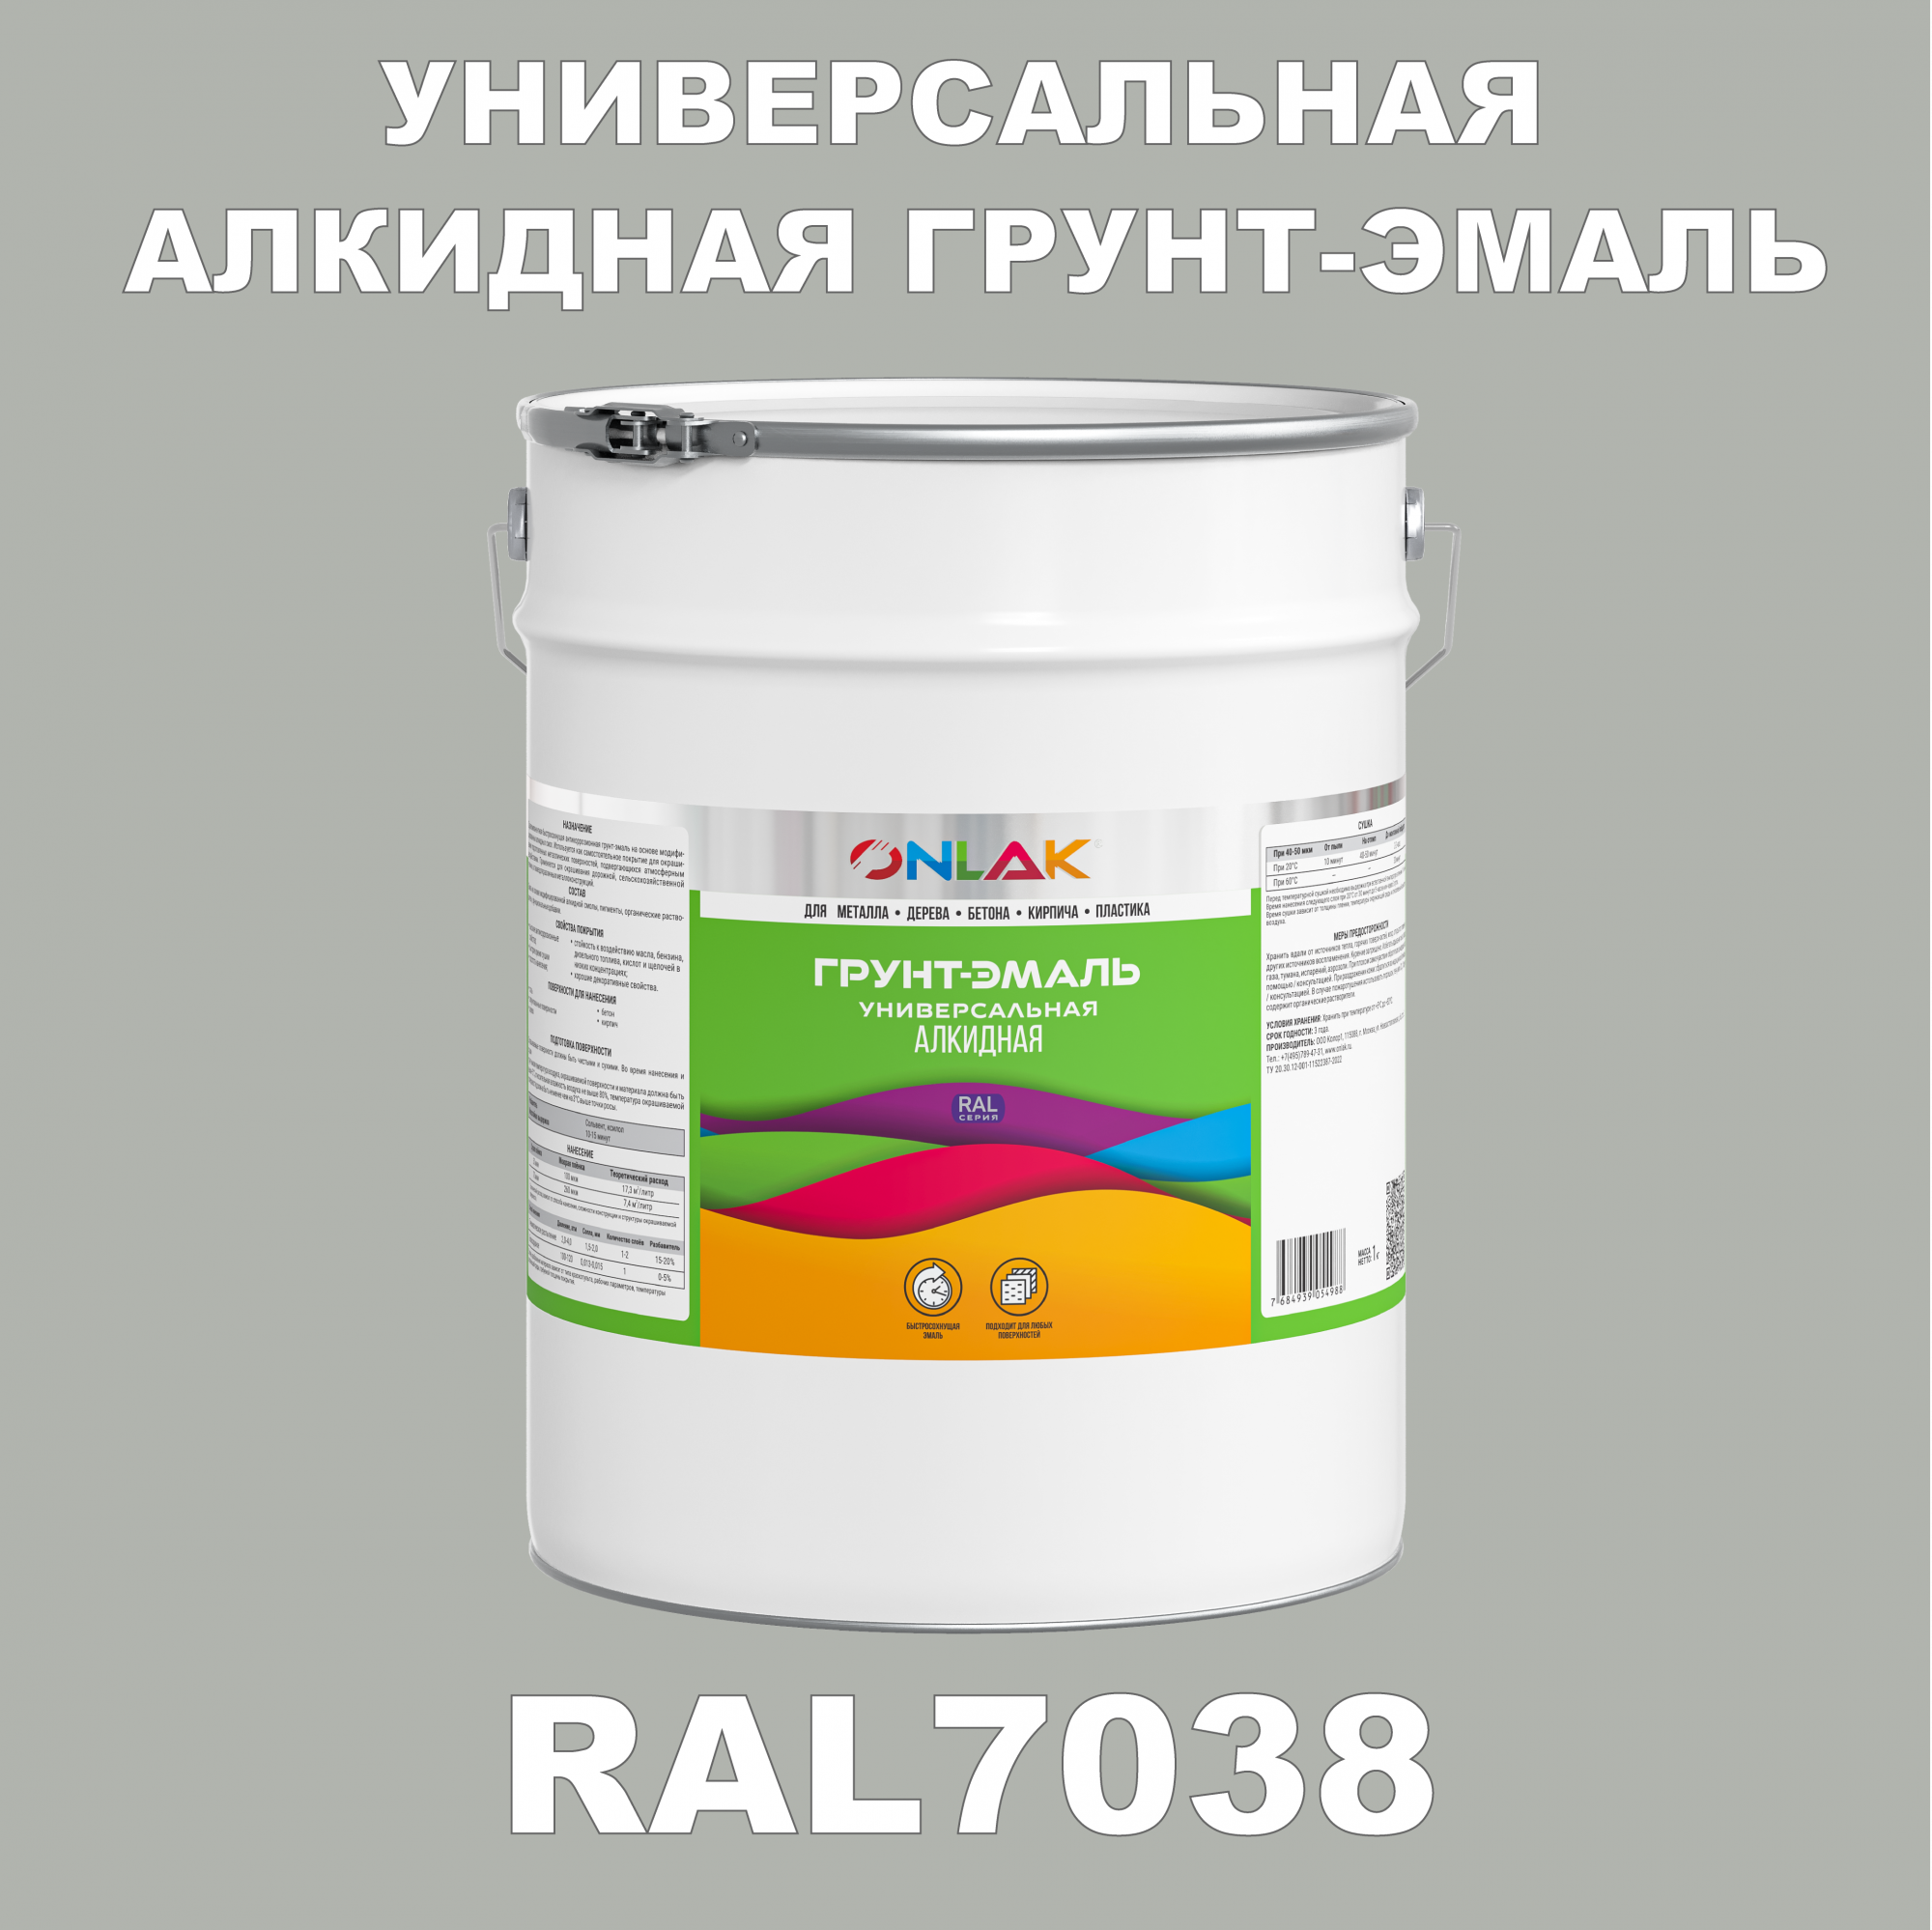 Грунт-эмаль ONLAK 1К RAL7038 антикоррозионная алкидная по металлу по ржавчине 20 кг грунт эмаль yollo по ржавчине алкидная серая 0 9 кг